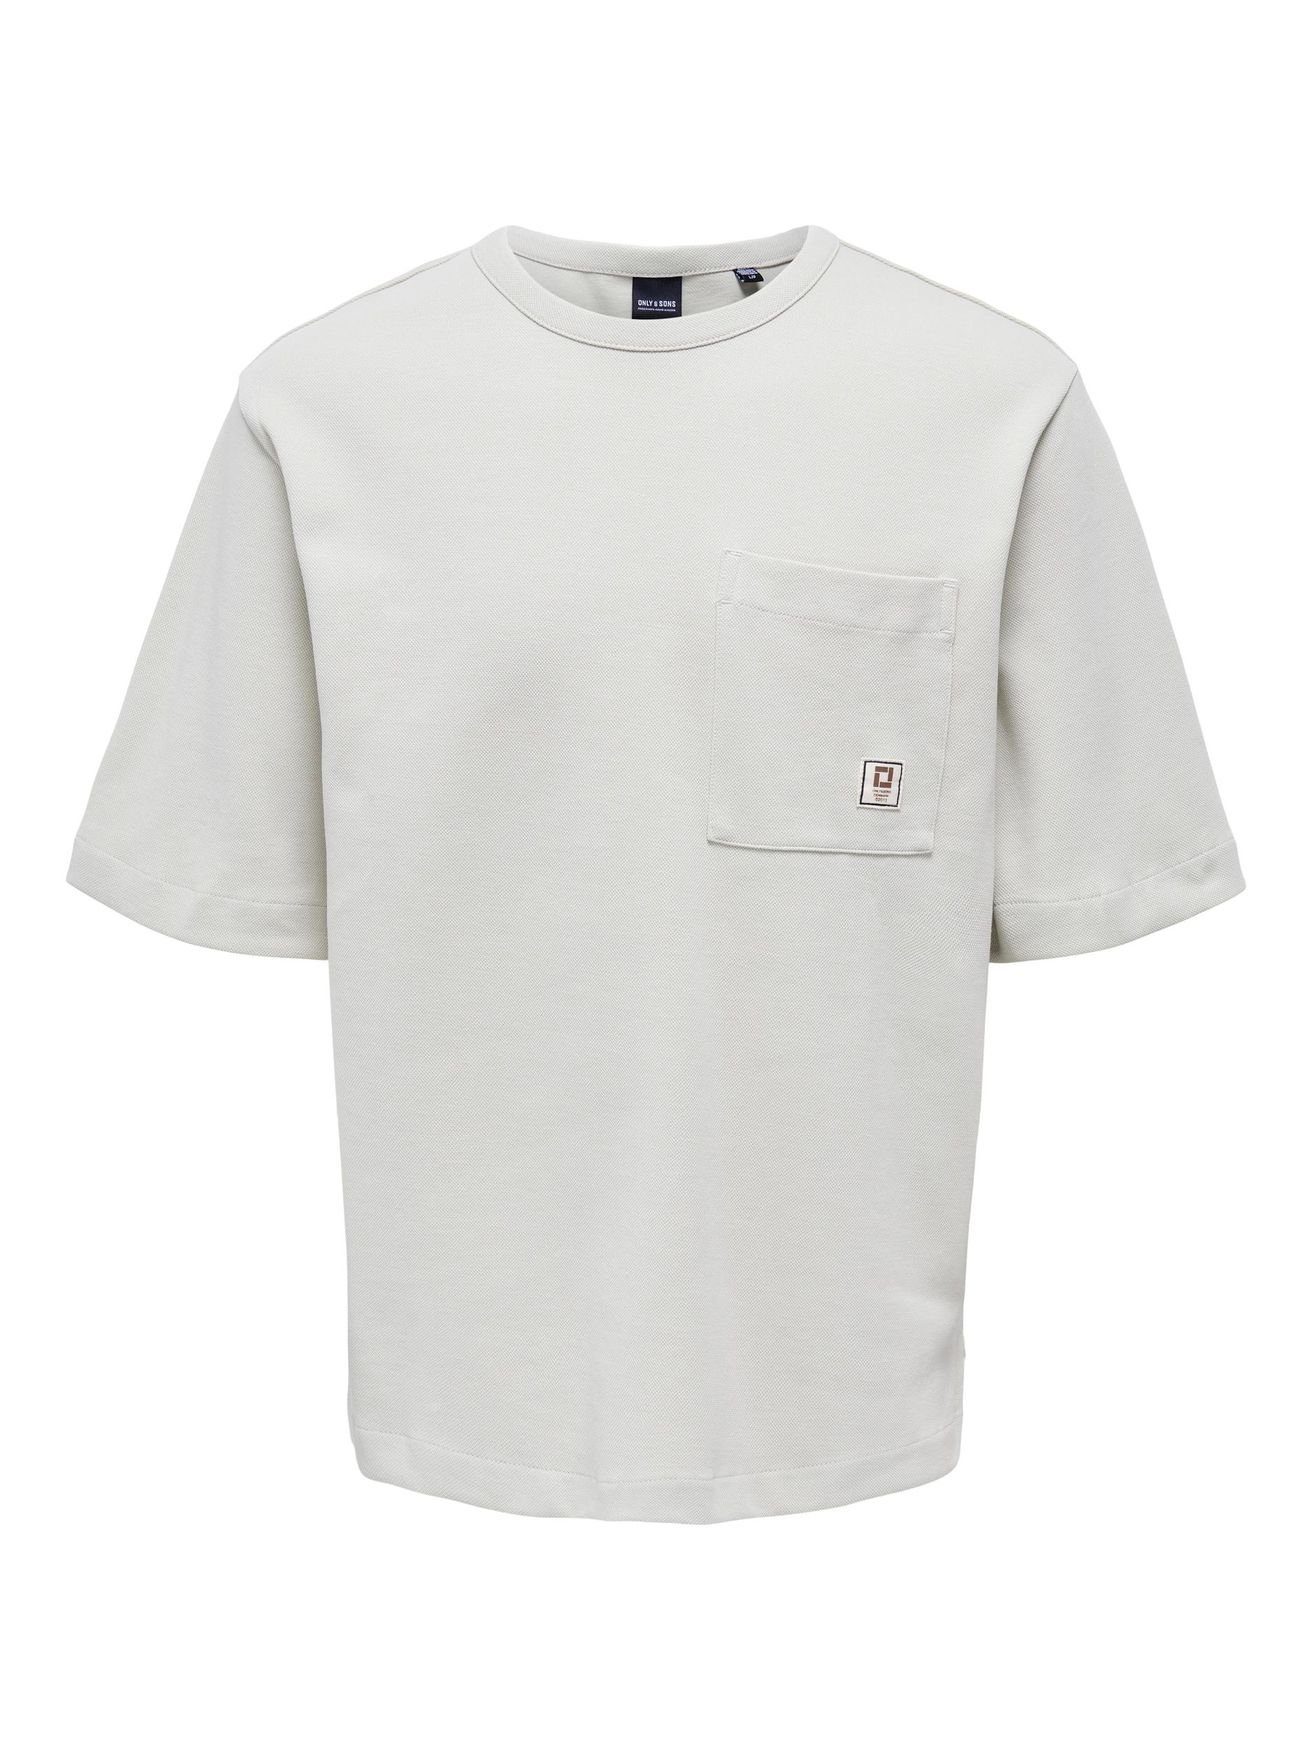 ONSLEE ONLY T-Shirt 5060 Weiß T-Shirt & in Brusttasche SONS mit